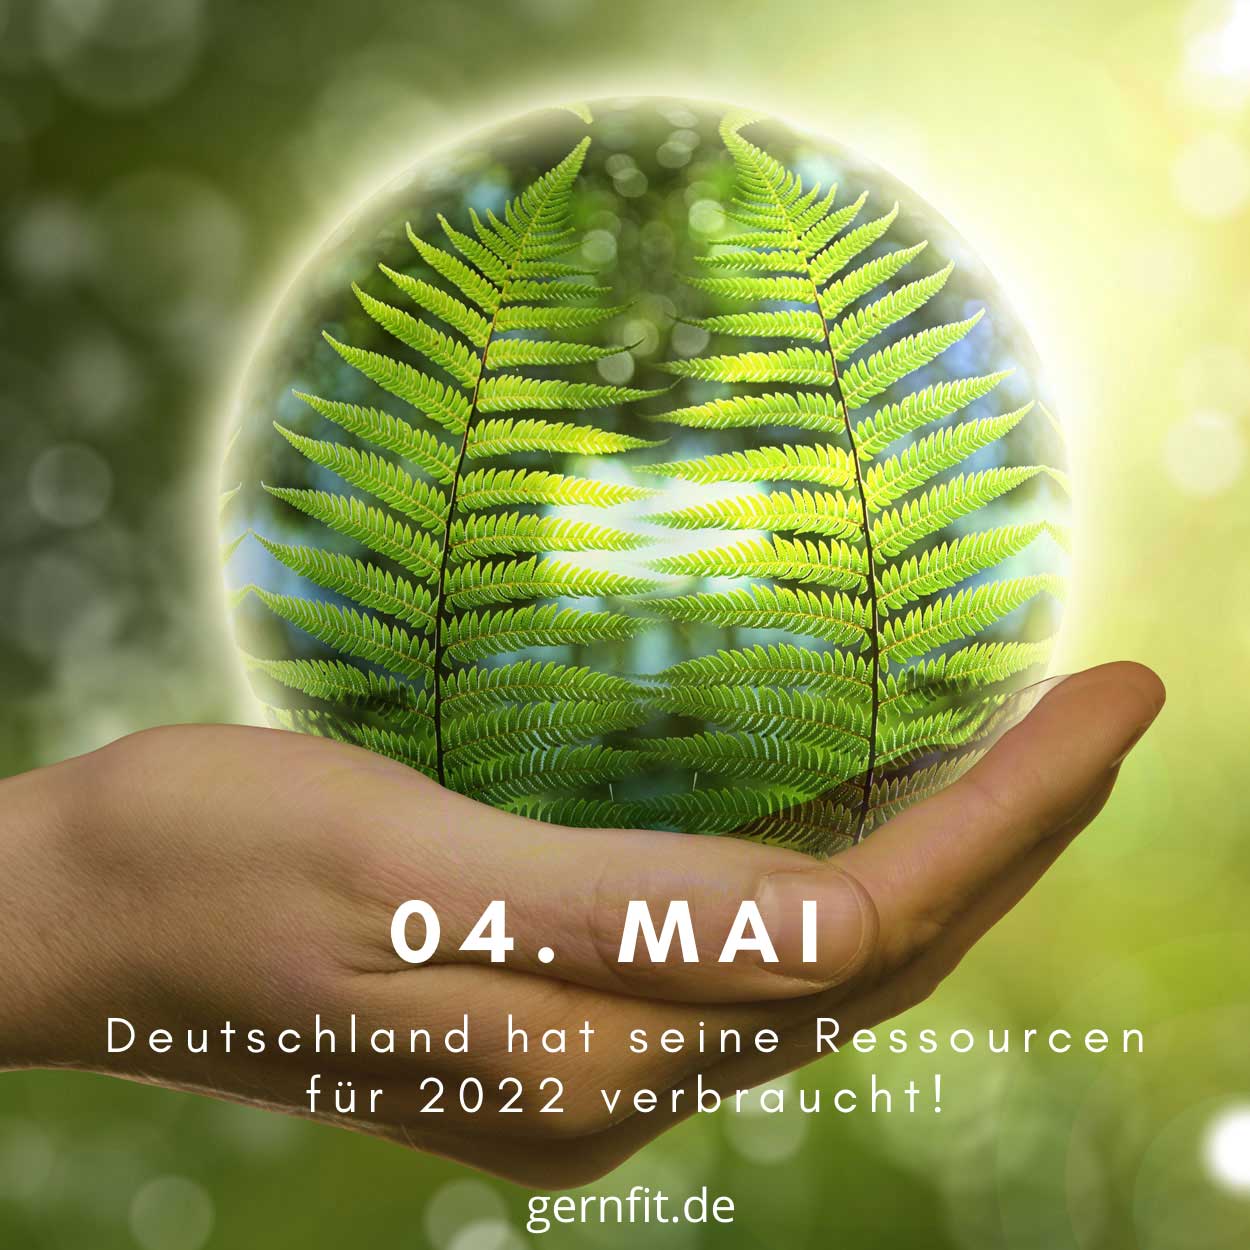 Deutscher Erdüberlastungstag 04. Mai 2022